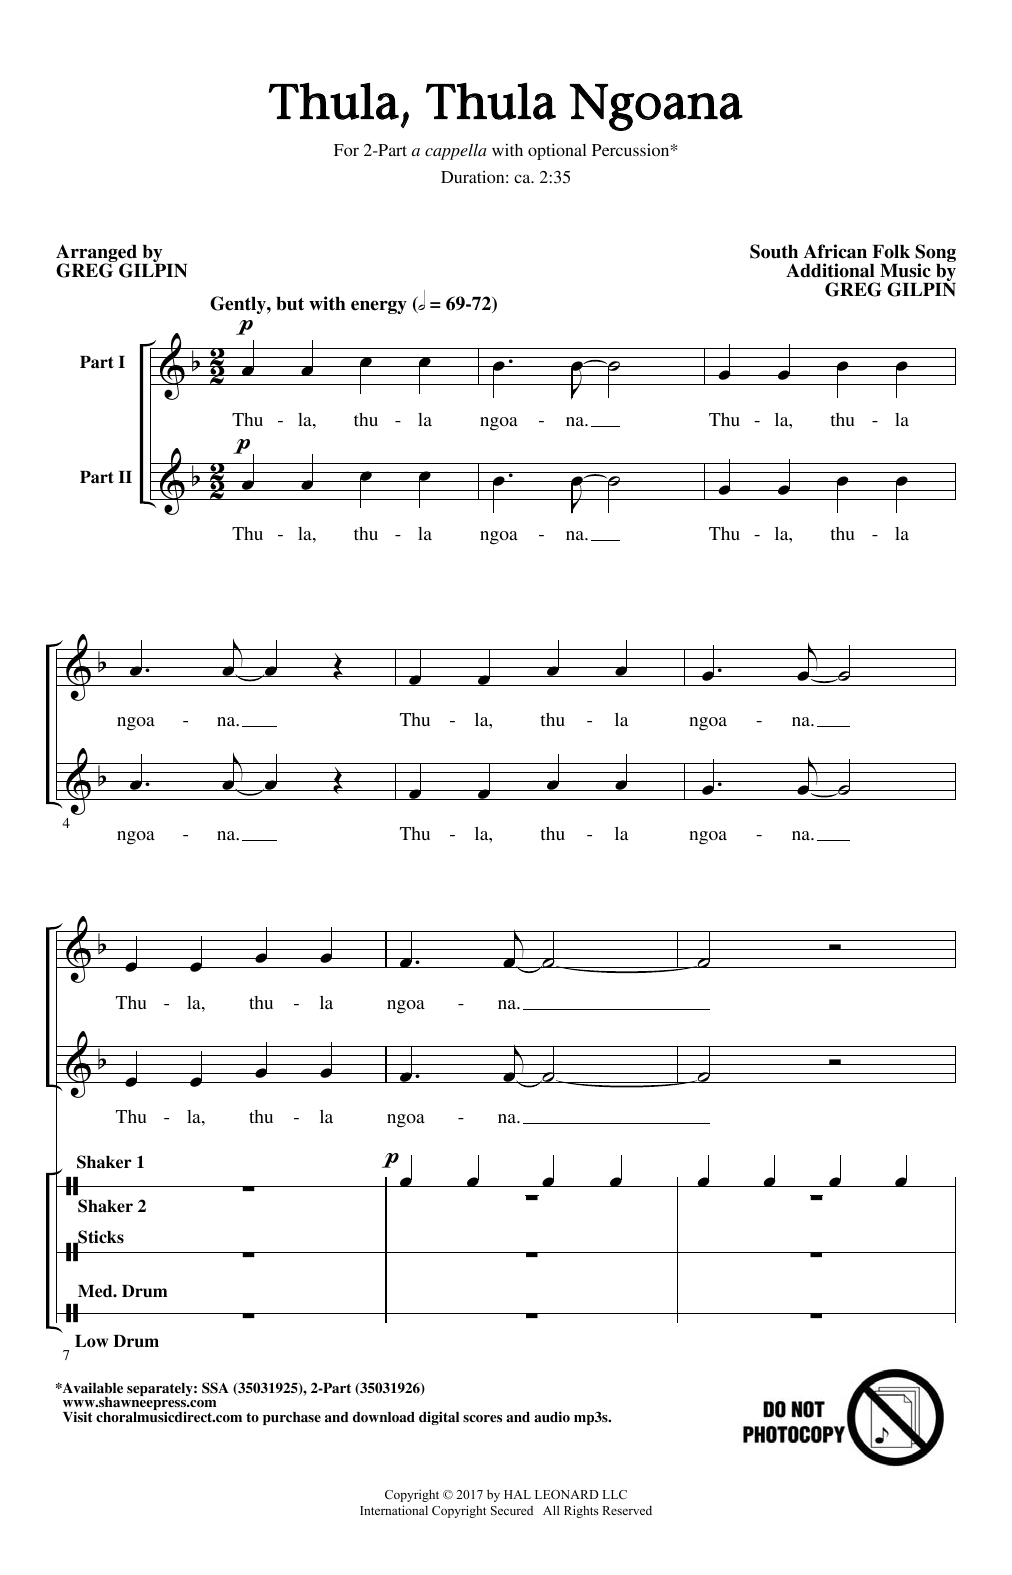 Greg Gilpin Thula Thula Ngoana Sheet Music Notes & Chords for SSA - Download or Print PDF